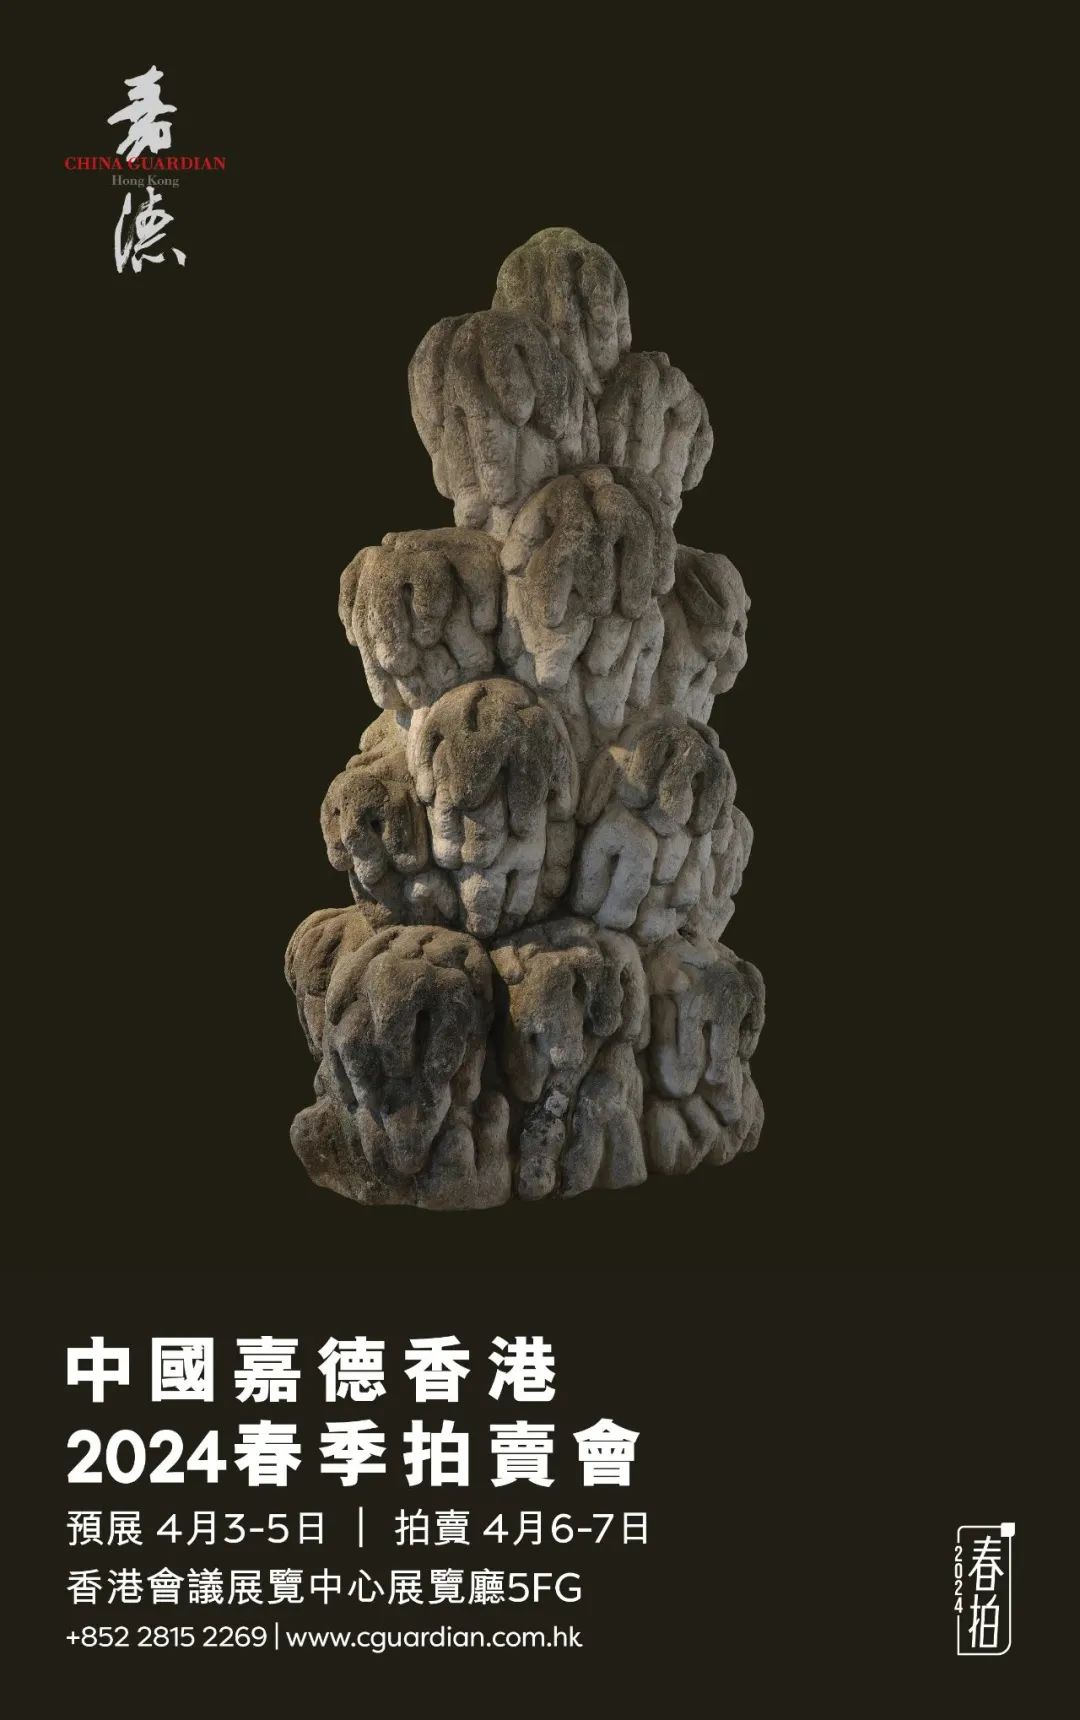 丁文父泥留斋十七件藏石在香港拍了六百万